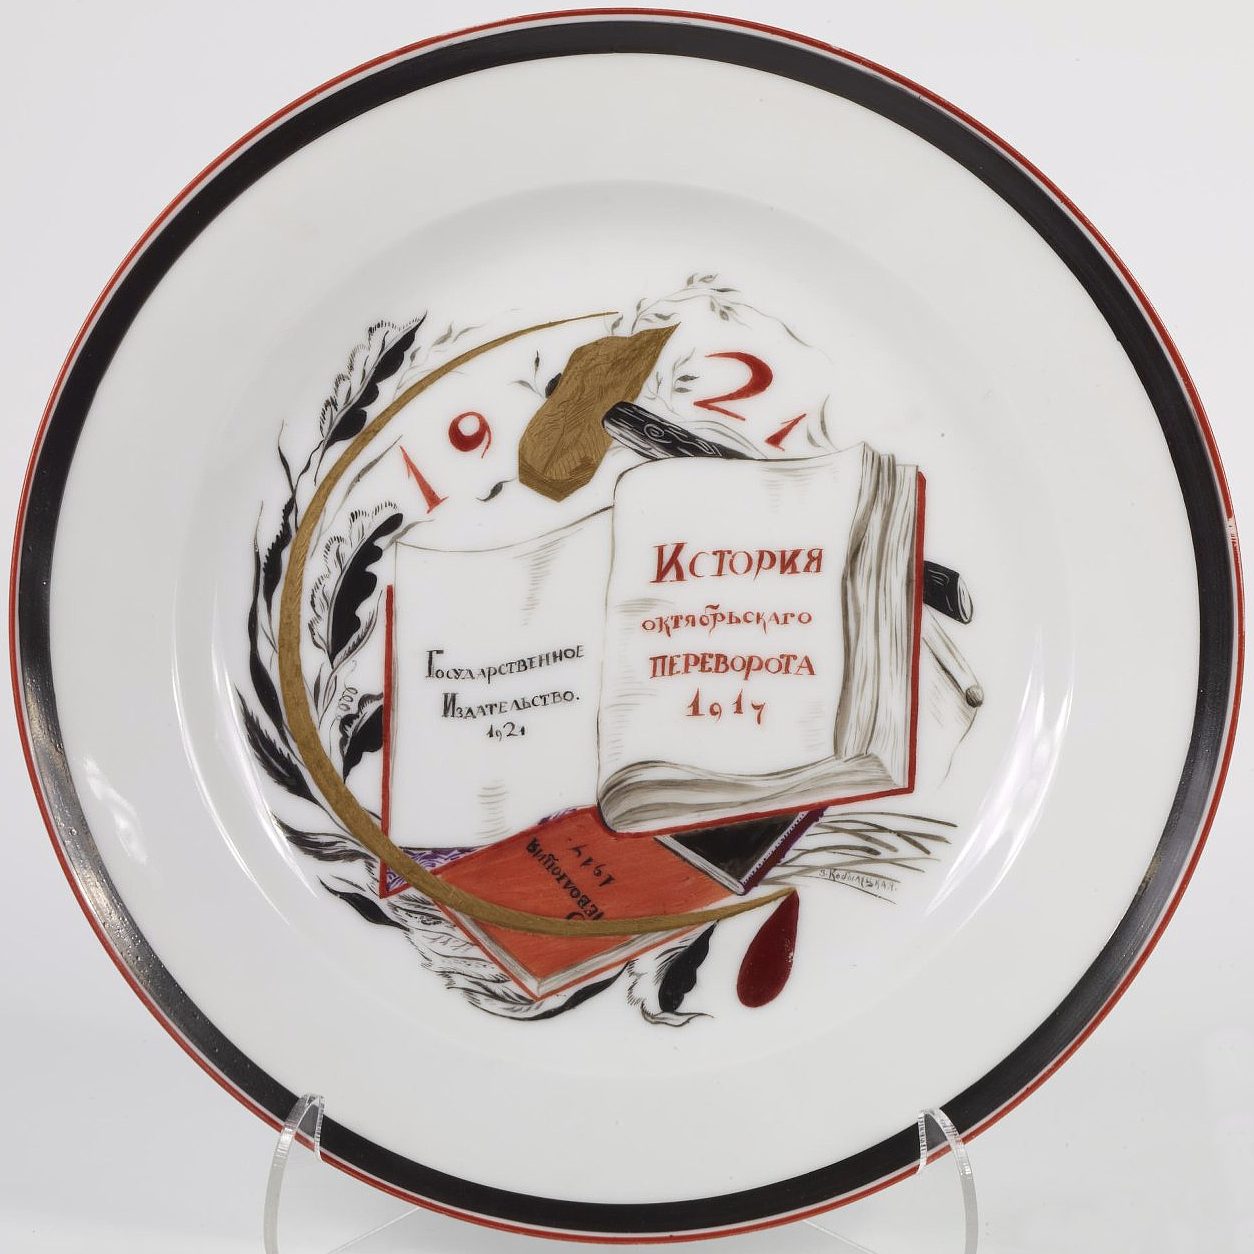 Soviet porcelain plate "History of October Coup" by Kobyletskaya